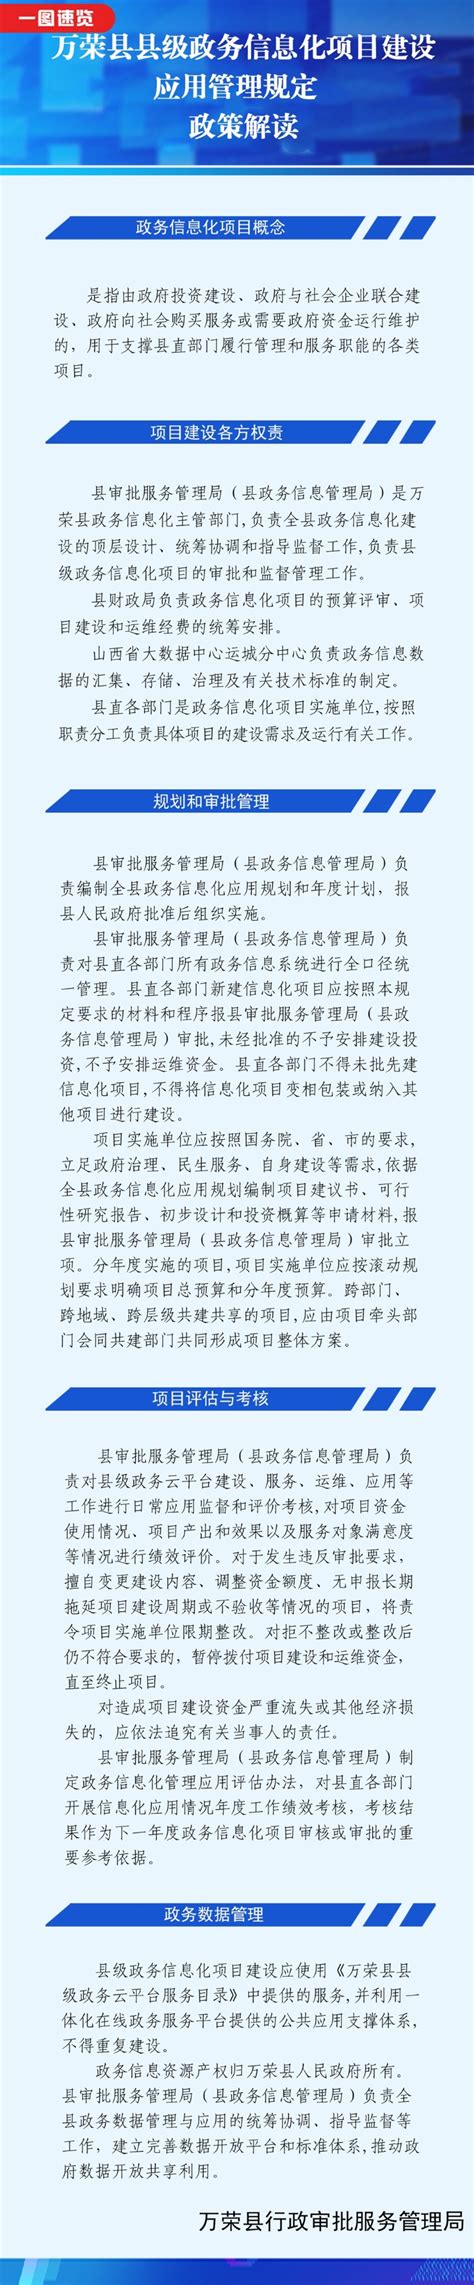 2022年山西运城万荣县公开招聘大学生村官工作领导组公告(2)